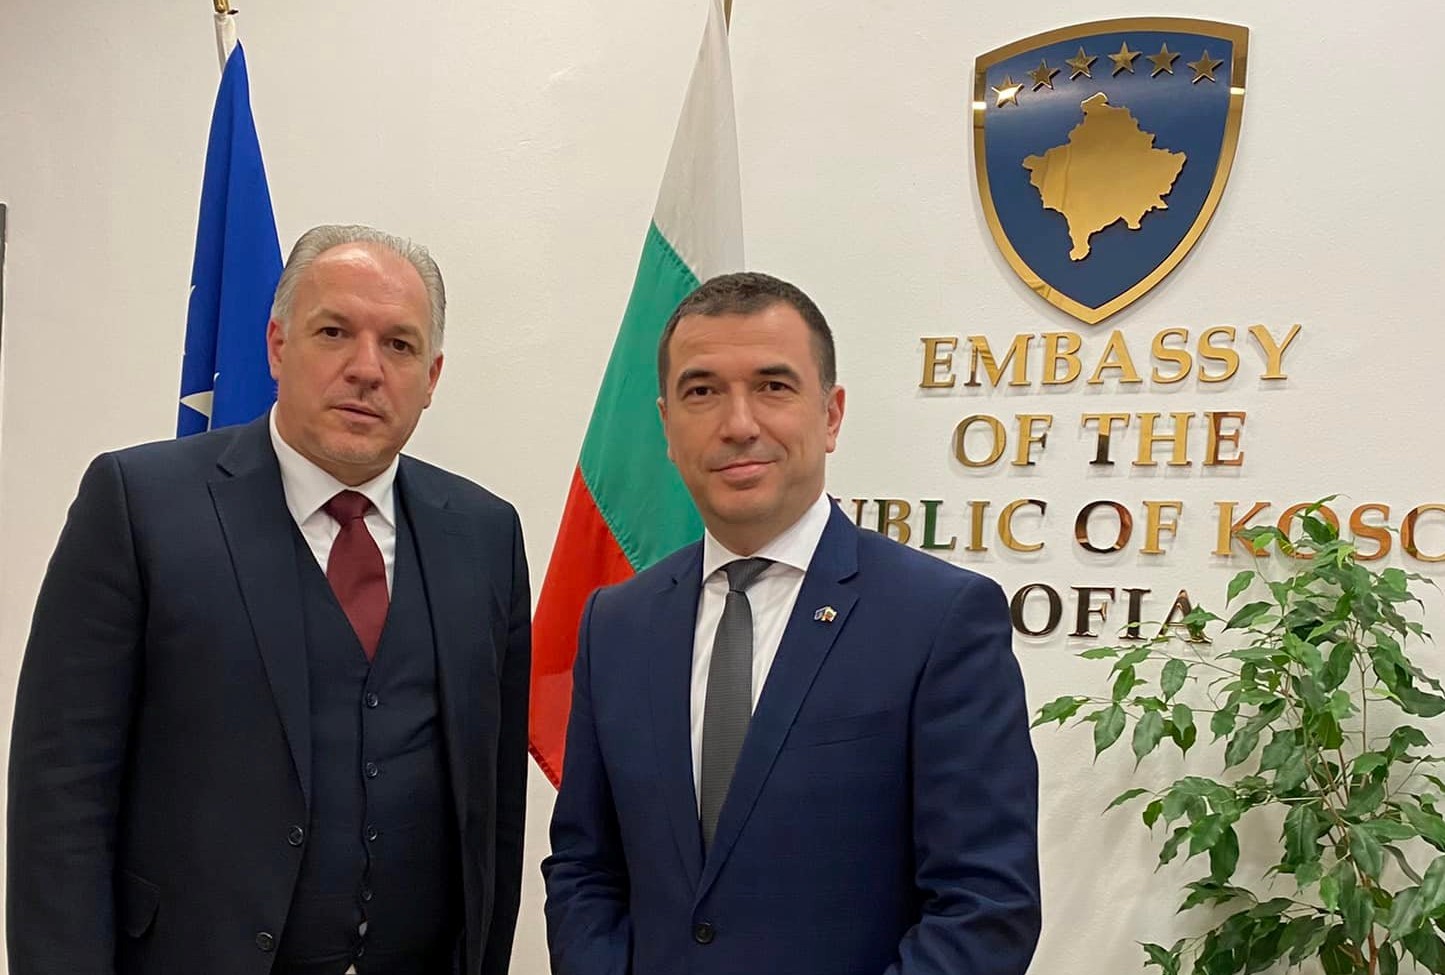 Ministri i Zhvillimit Rajonal z.Fikrim Damka në kuadër të vizitës zyrtare në Sofje, vizitoi edhe Ambasadën e Republikës së Kosovës në Sofje